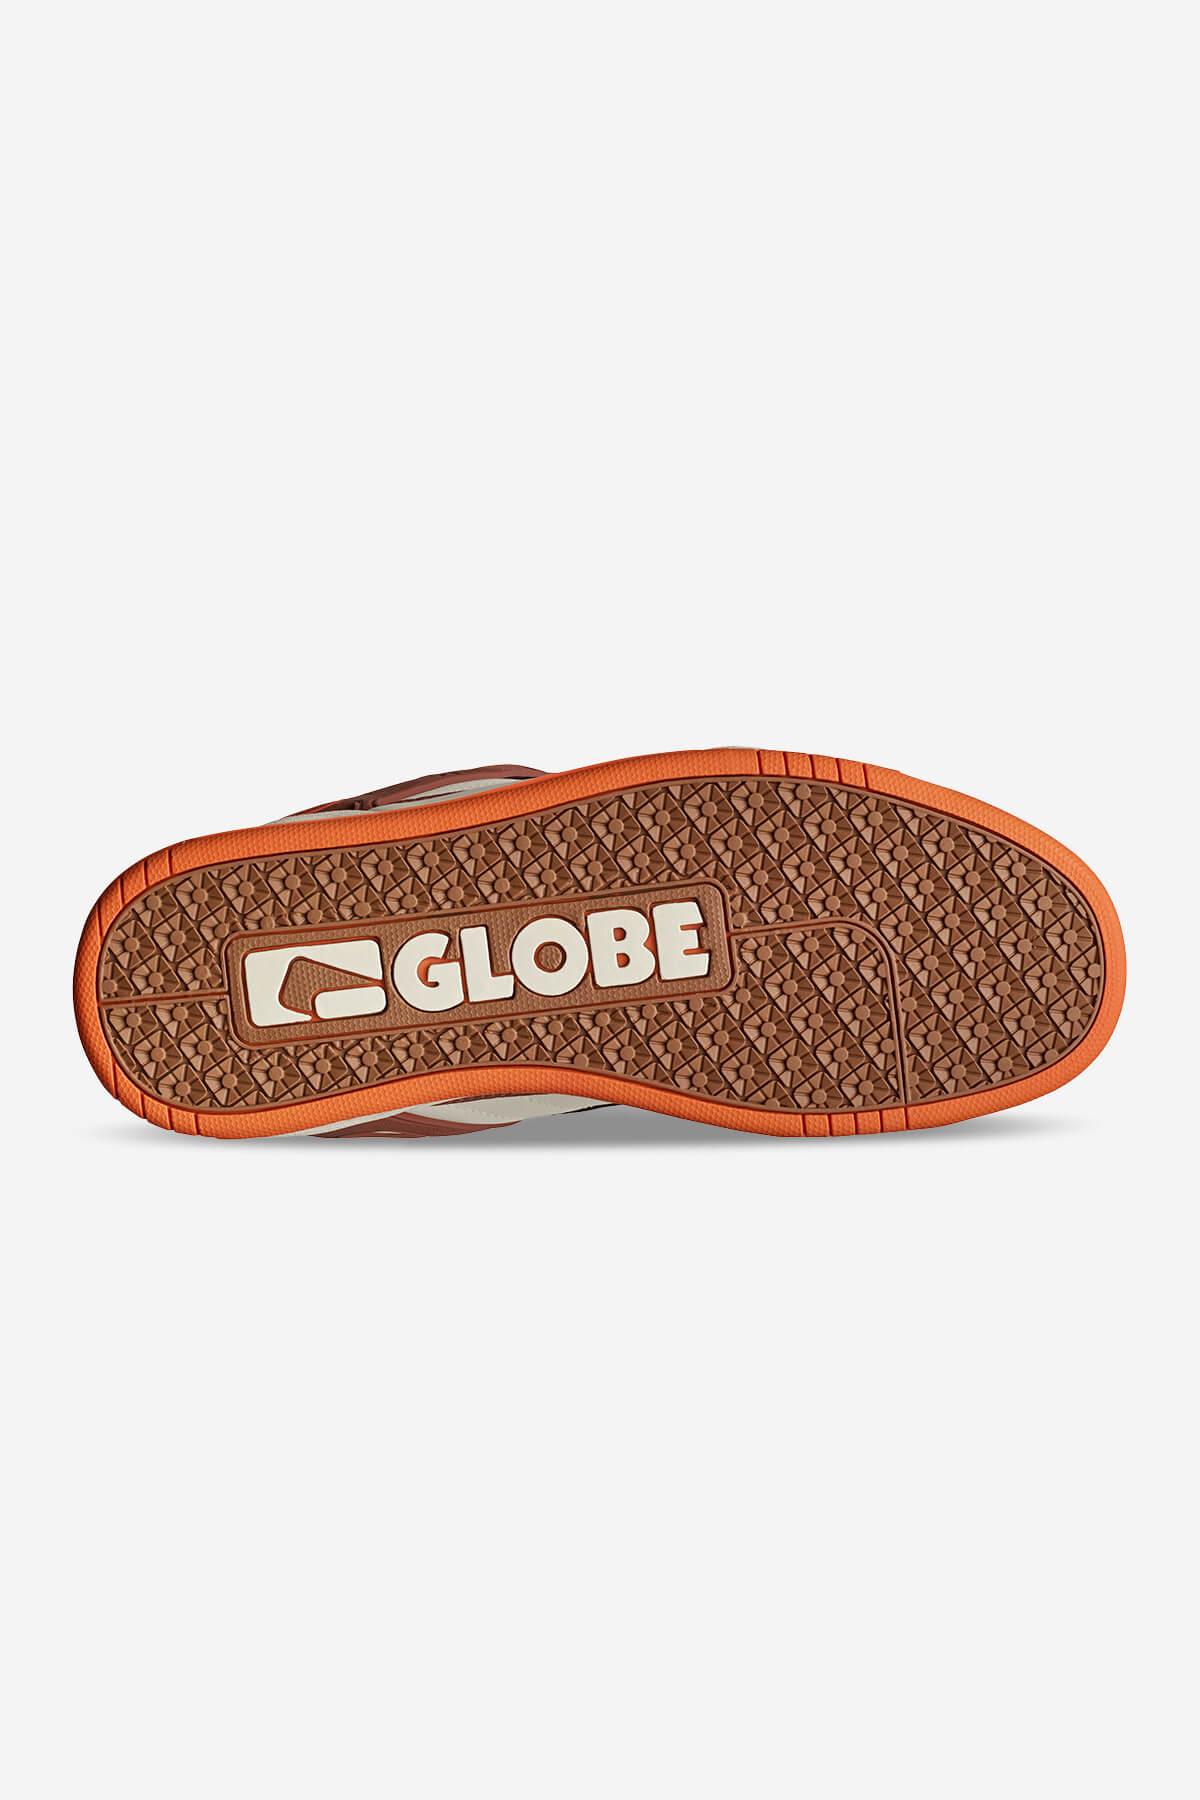 Globe - Tilt - Antique/Mocha - skateboard Zapatos